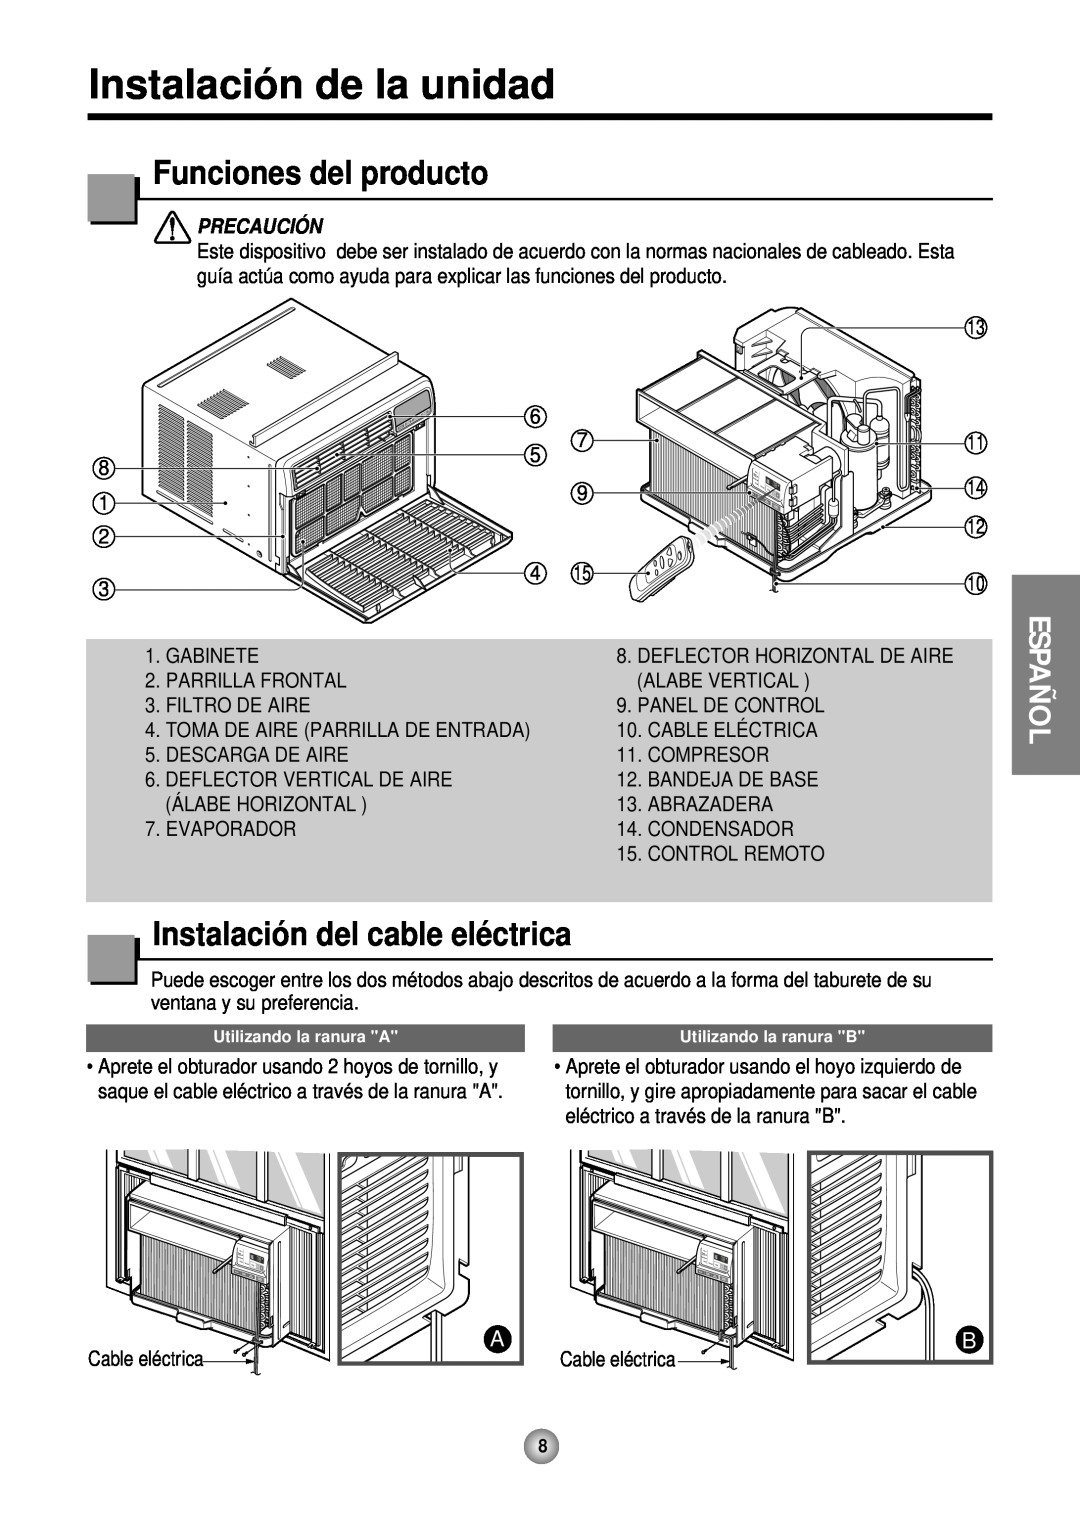 Friedrich CP12 Instalació n de la unidad, Funciones del producto, Instalació n del cable elé ctrica, Español, Precaución 